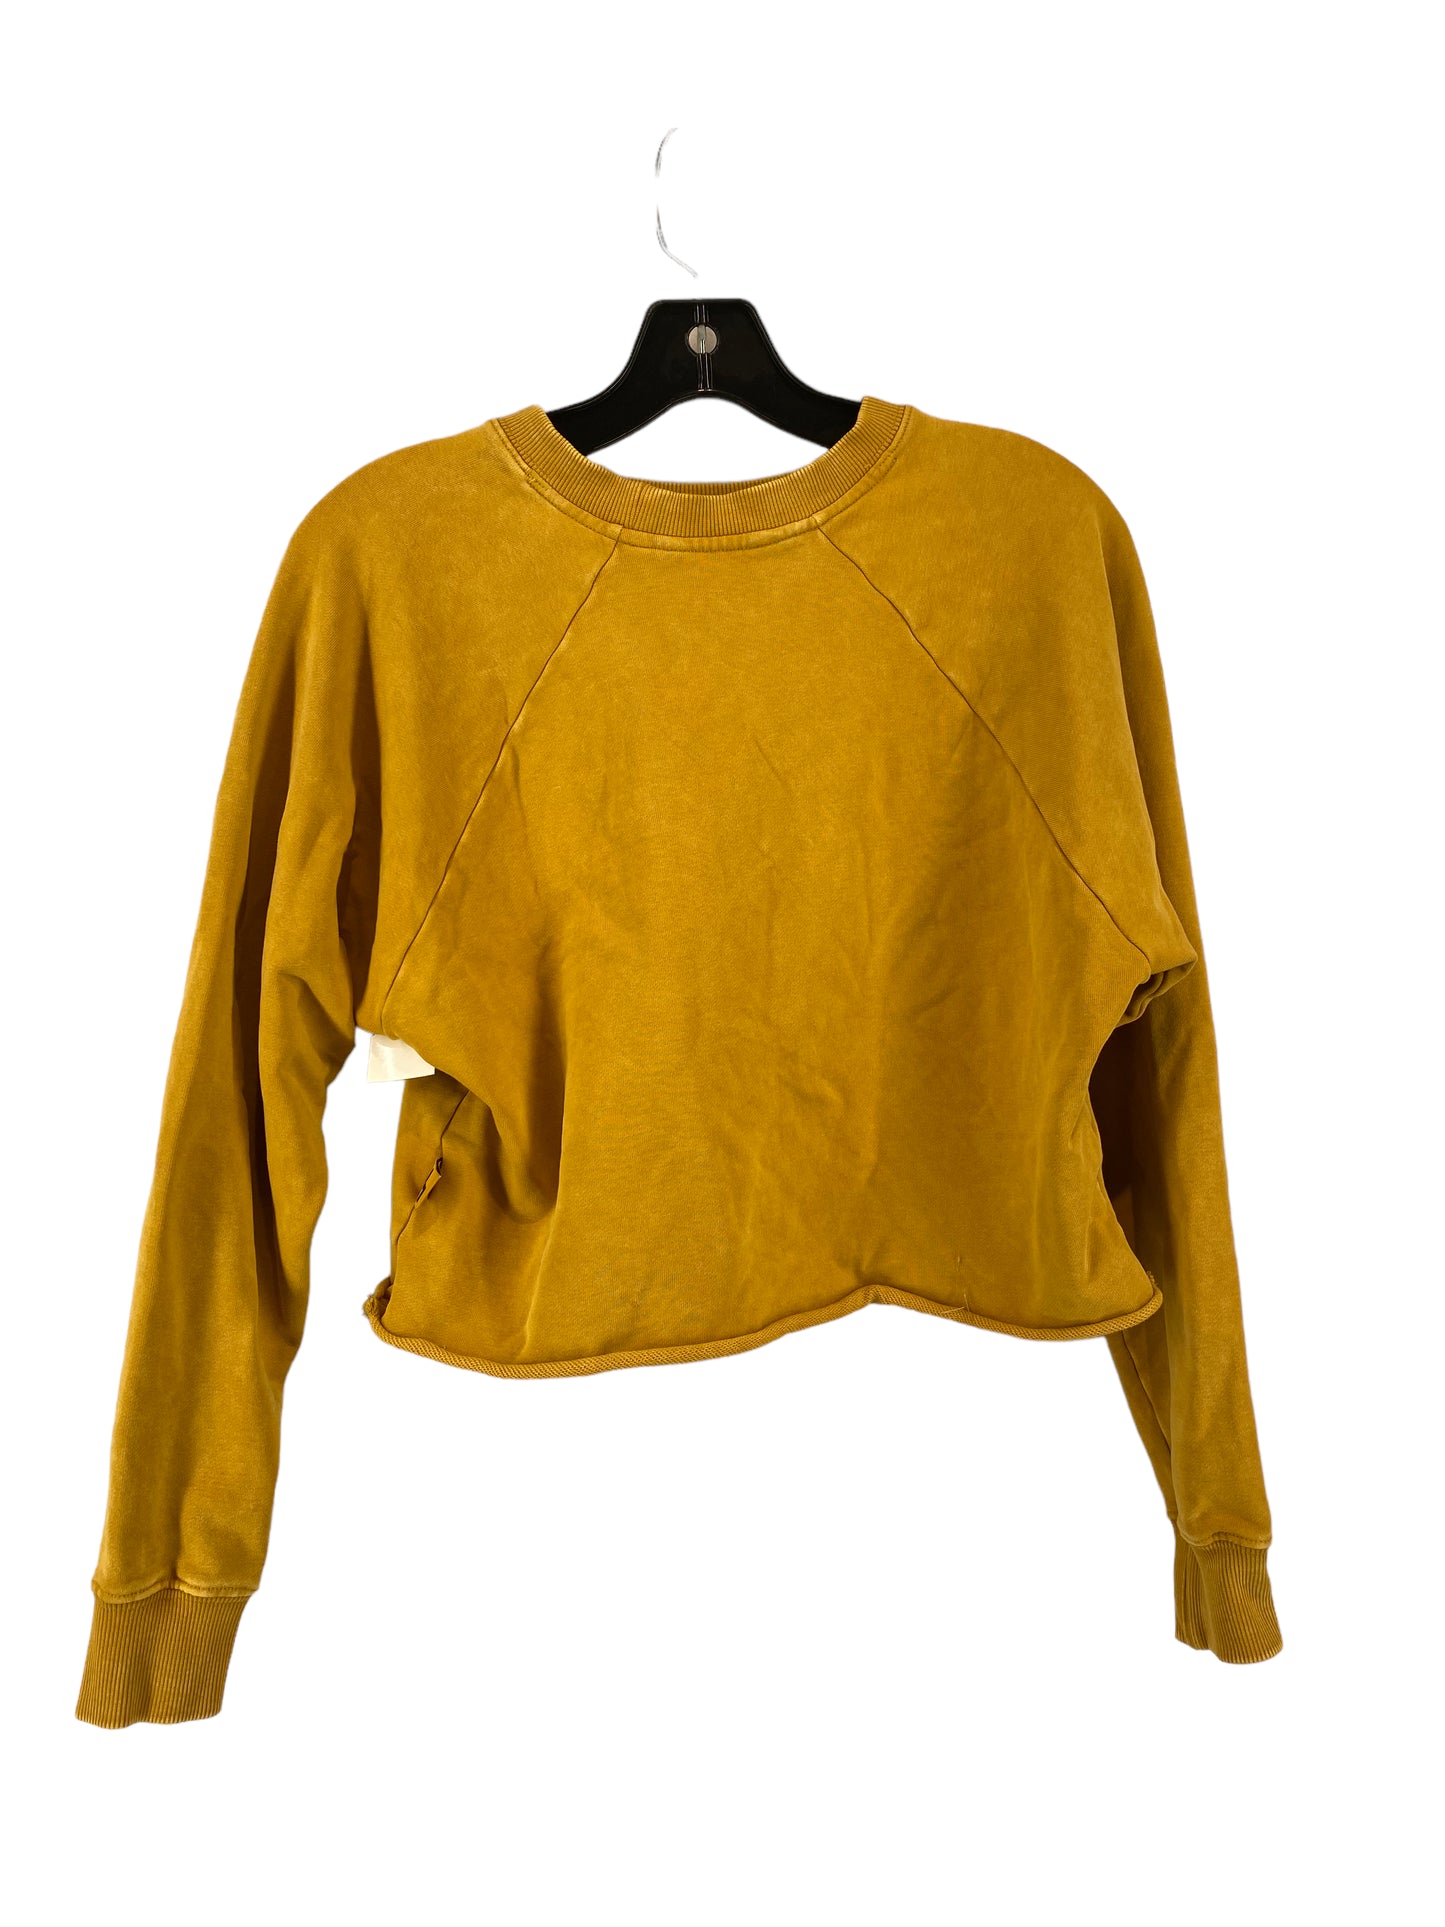 Sweatshirt Crewneck By Joy Lab  Size: Xs